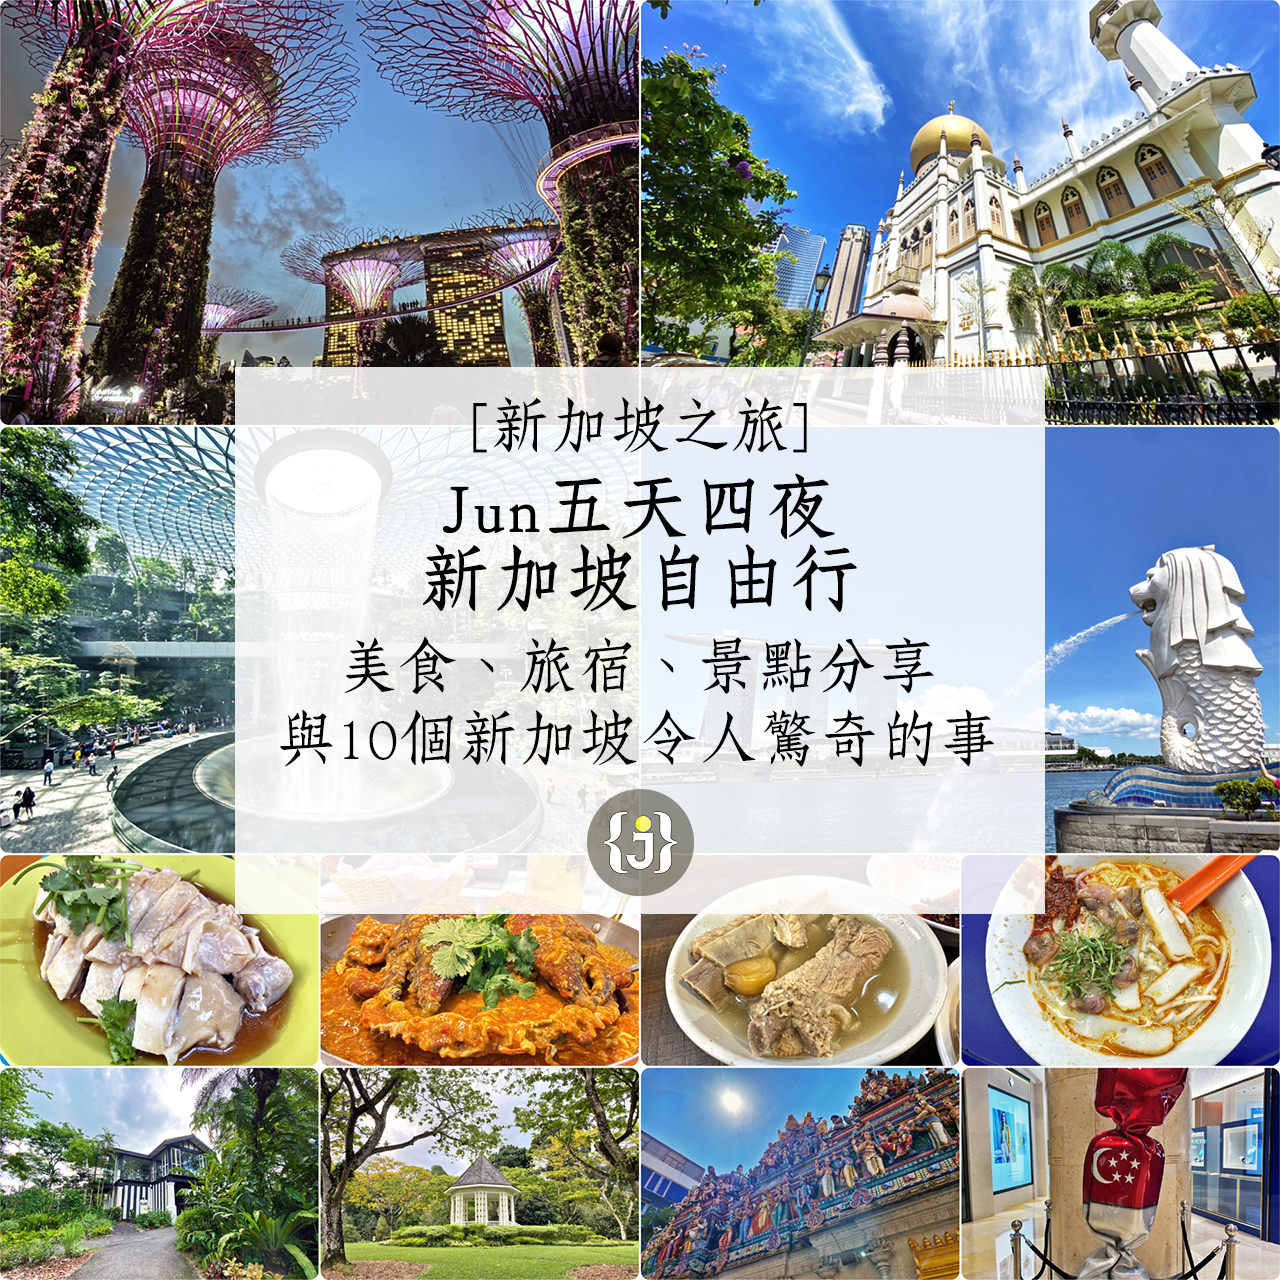 【新加坡之旅】Jun五天四夜新加坡自由行 美食、旅宿、景點分享！